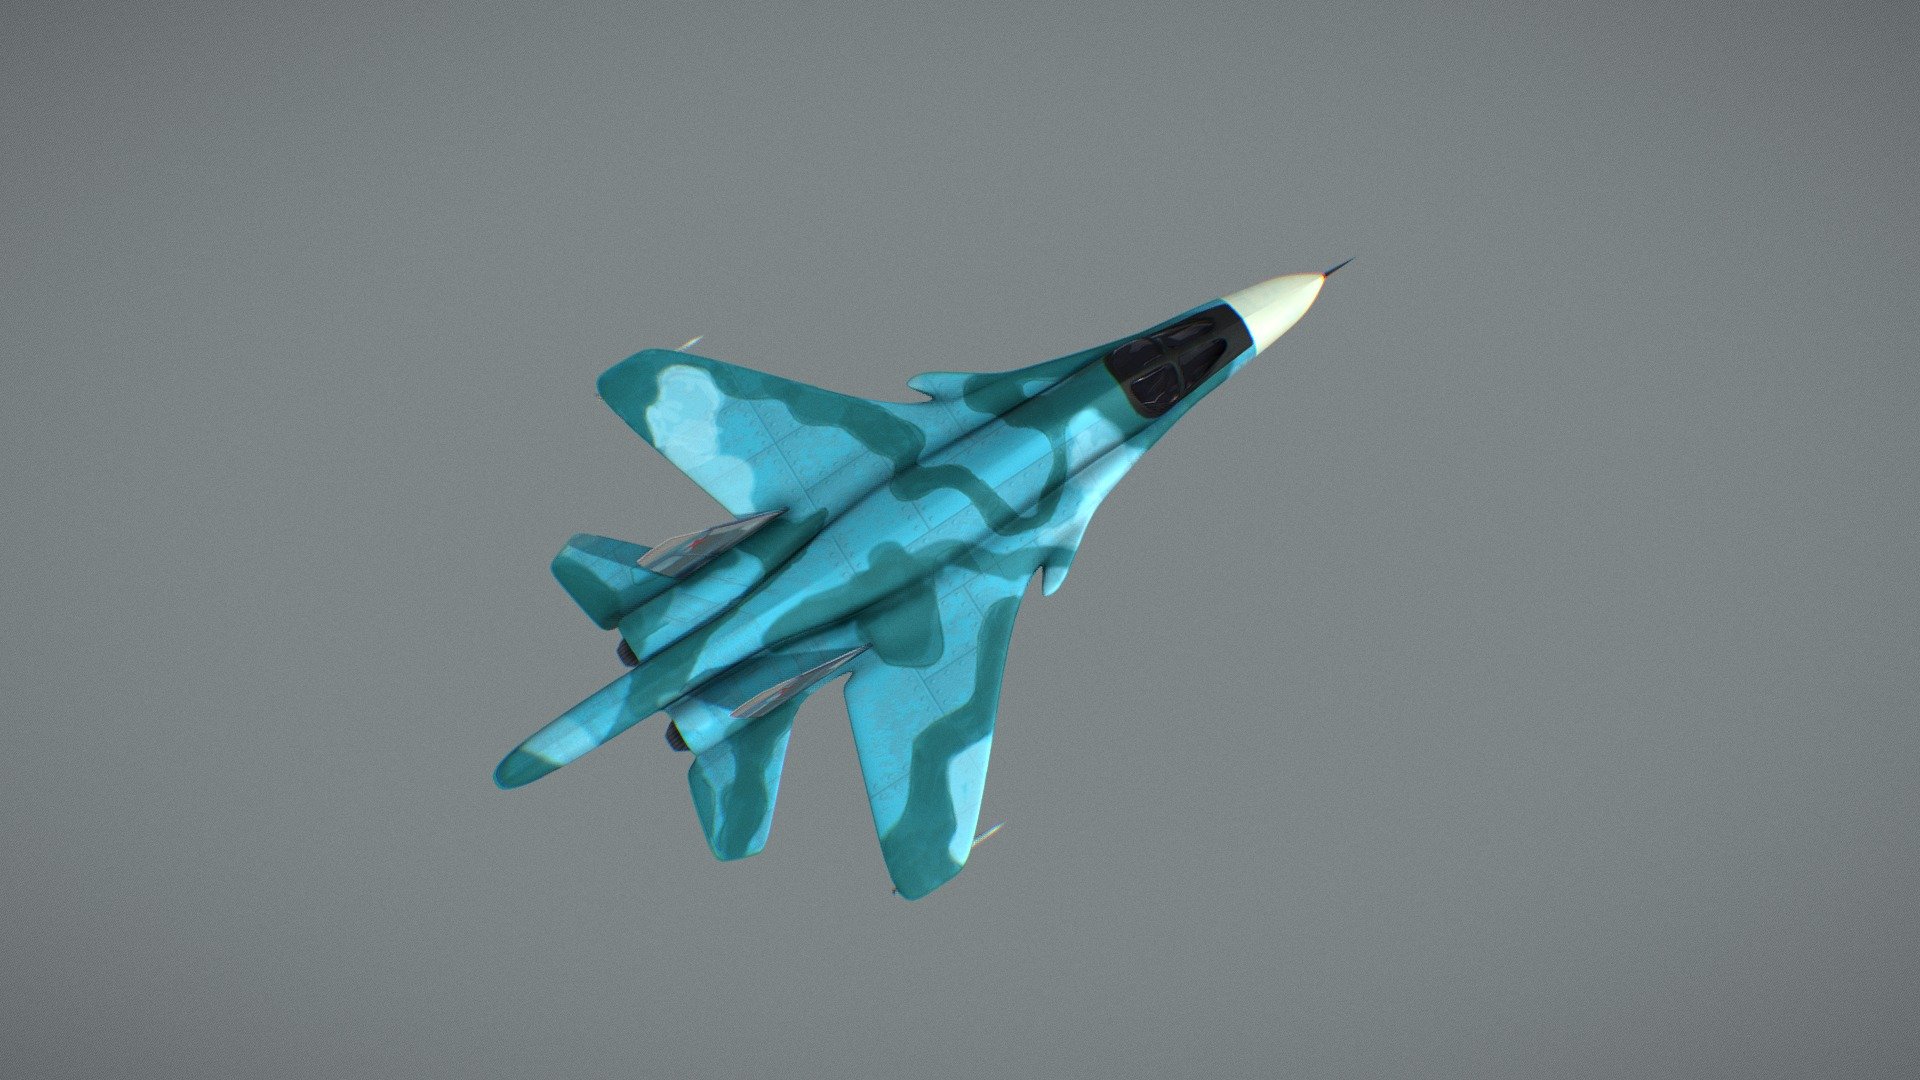 Sukhoi Su-34